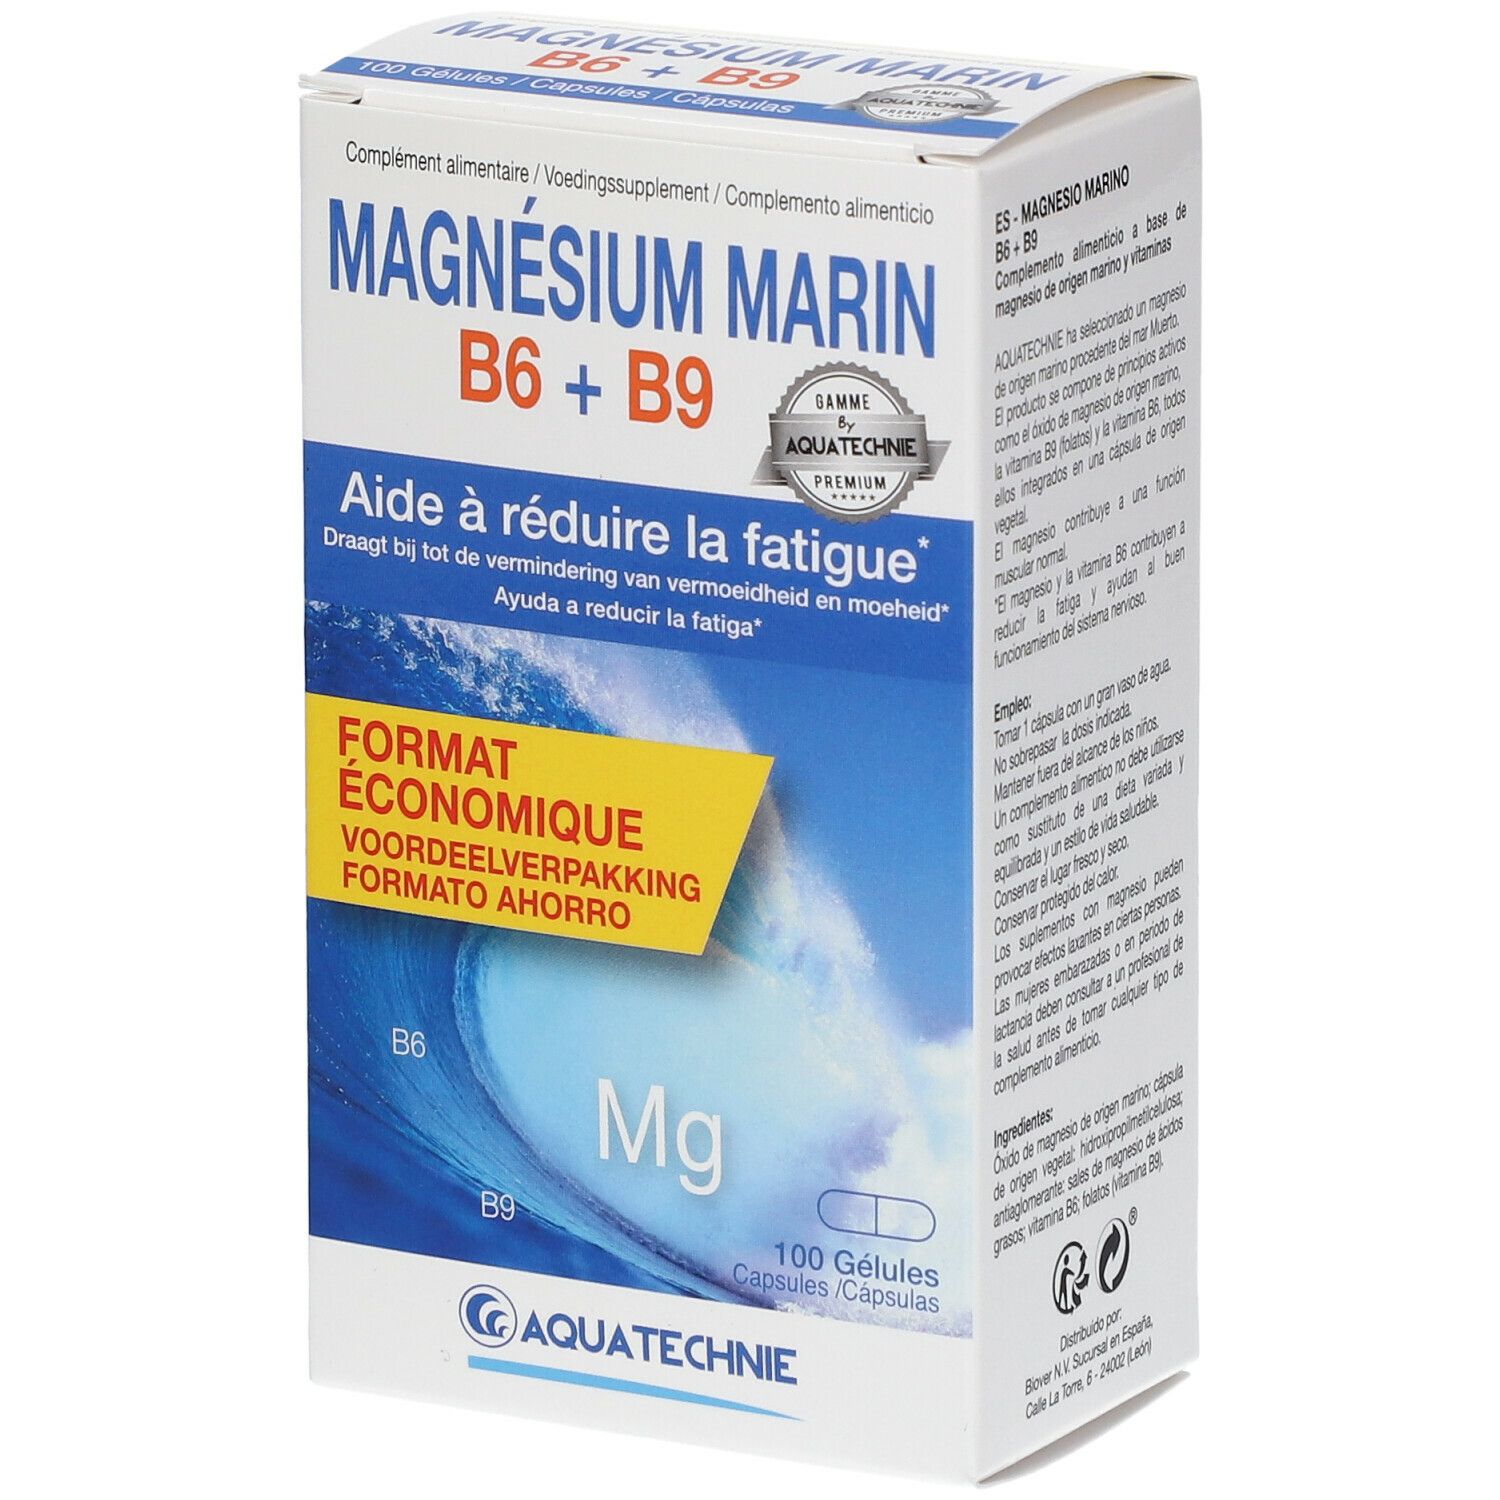 COSMEDIET Aquatechnie Marines Magnesium B6 + B9